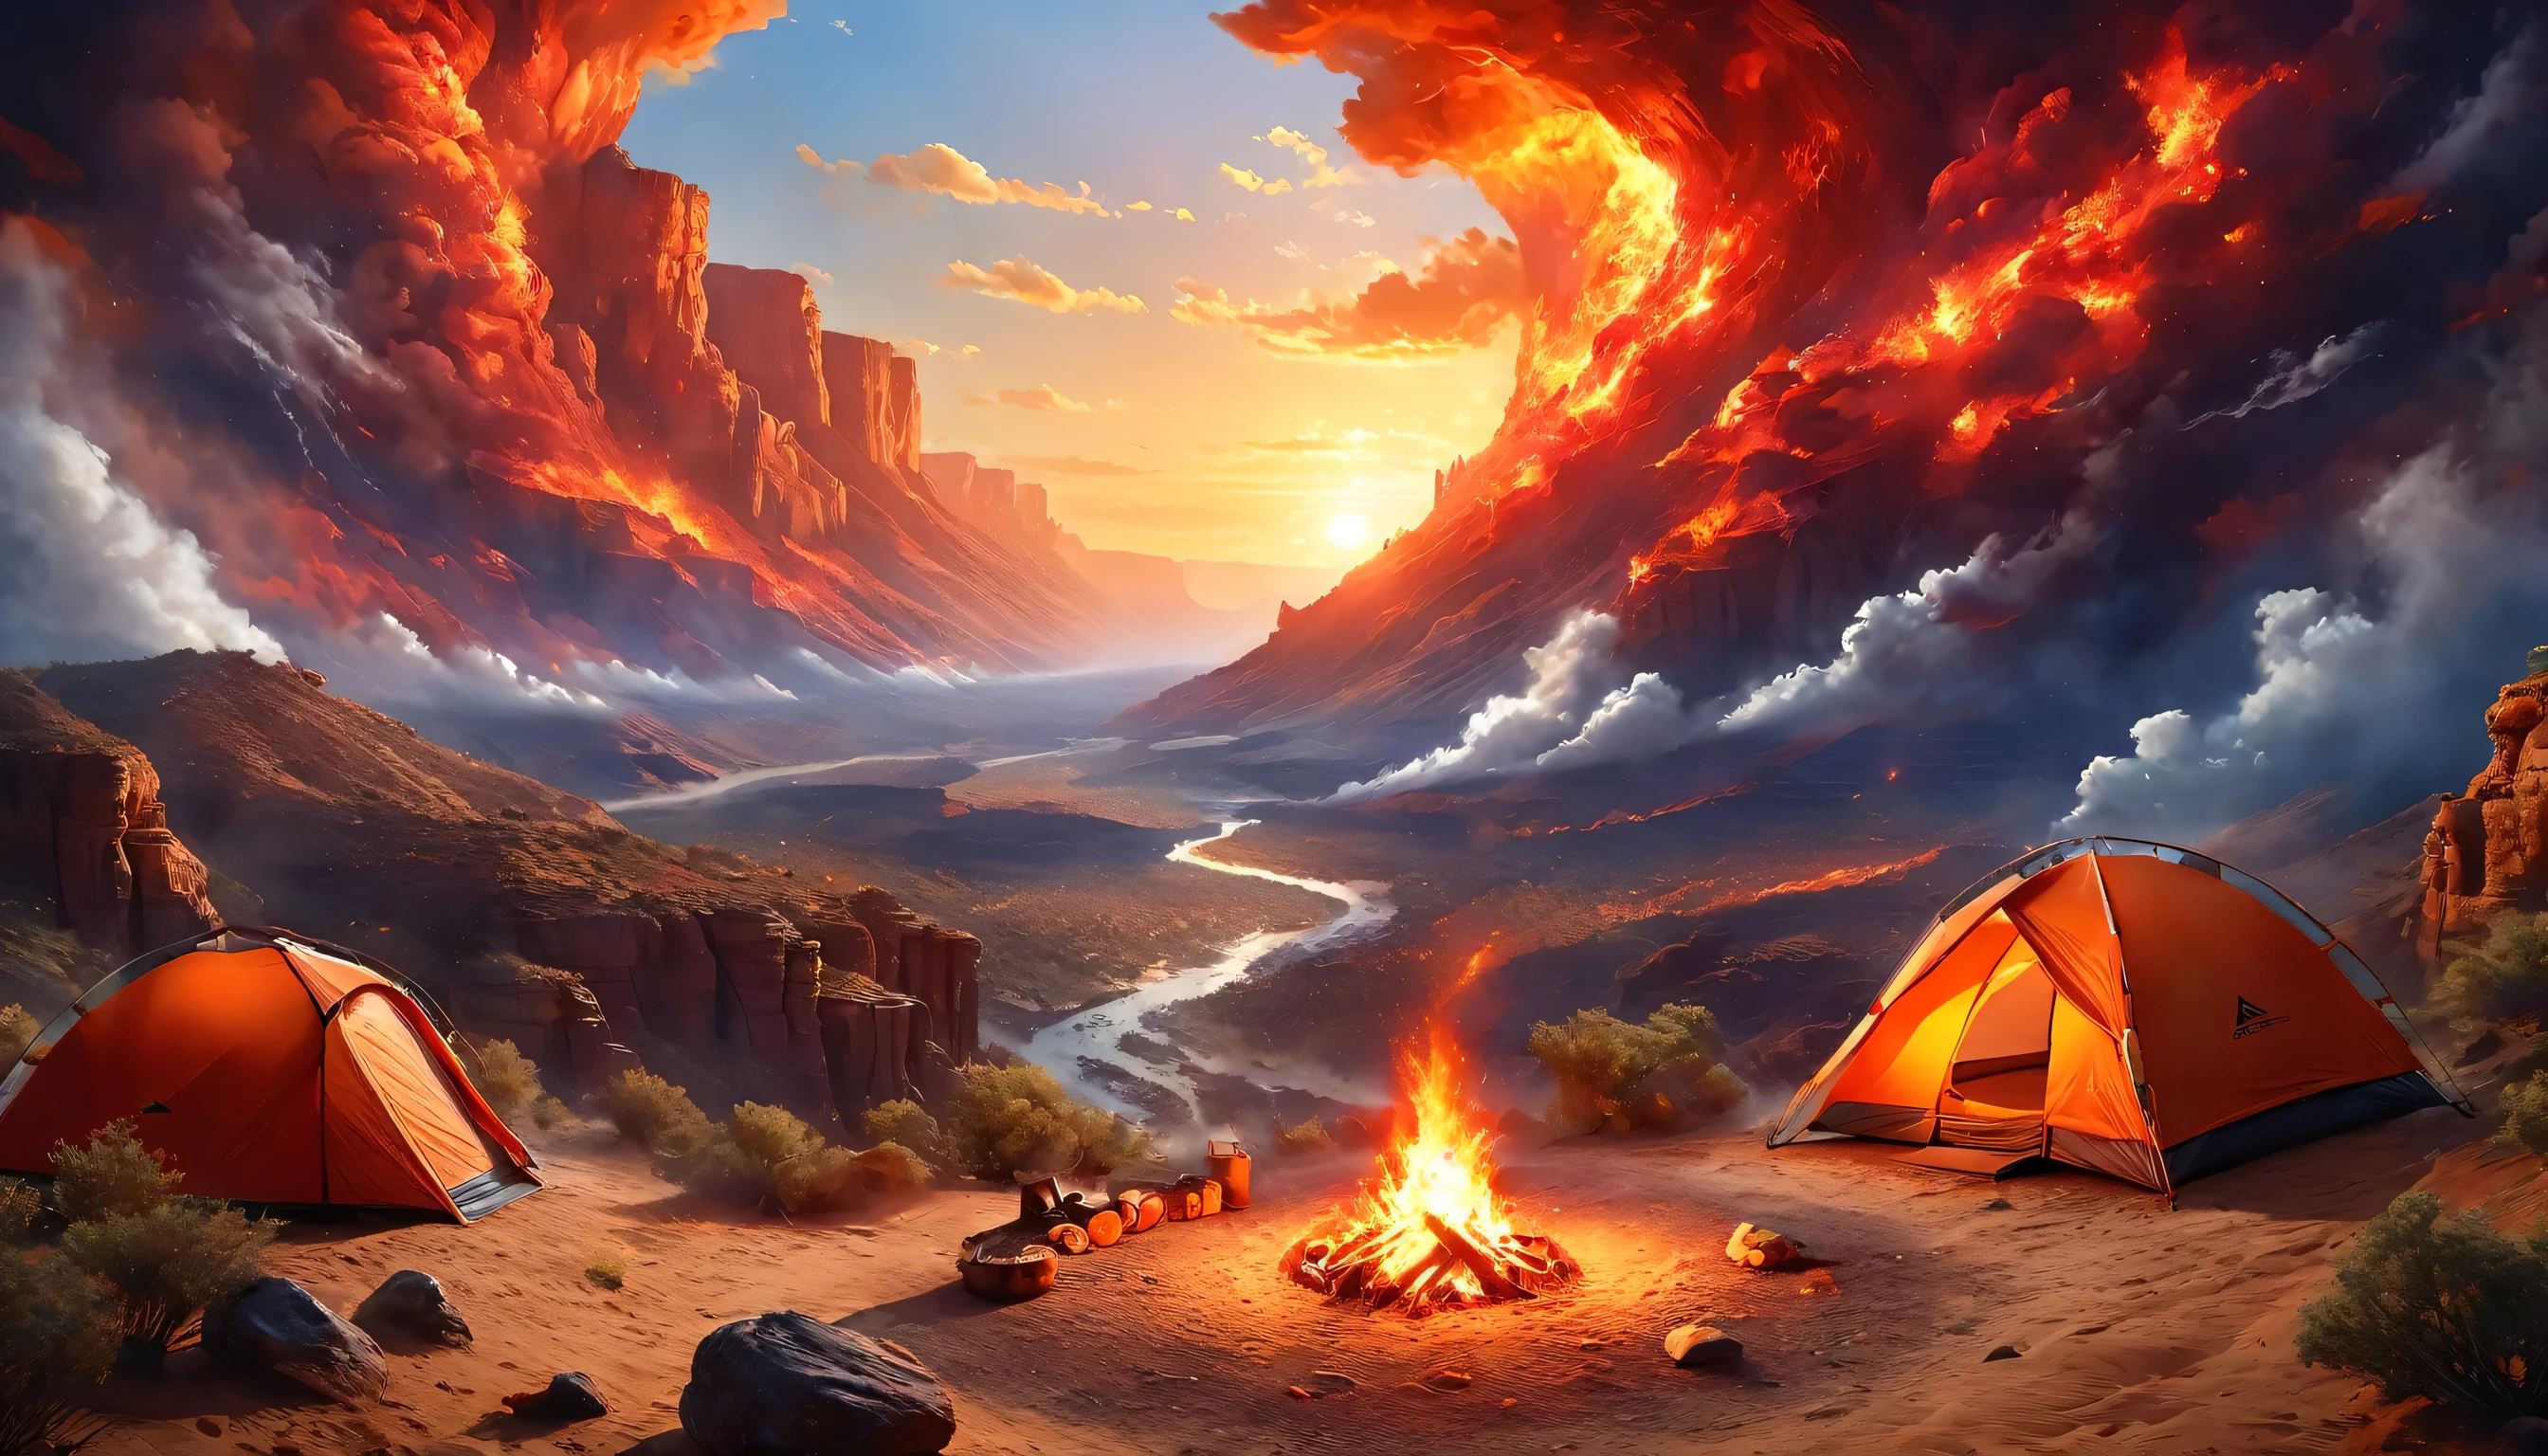 Арафед, картинка кемпинга (палатка: 1.2) и маленький (костер: 1,2), на вершине пустынной горы, закат, небо в разных оттенках  (Красный: 1.1), (Апельсин: 1.1), (лазурный: 1.1) (фиолетовый:1.1) из пожарного лагеря поднимается дым, открывается великолепный вид на пустынный каньон и ущелья, на горизонте редкие деревья, это время спокойствия, мир, и релаксация, Лучшее качество, 16 тыс.,  фотореализм, Фотосессия, удостоенная награды National Geographic, ультра широкий план, Бешеная туманность, Леди Тень